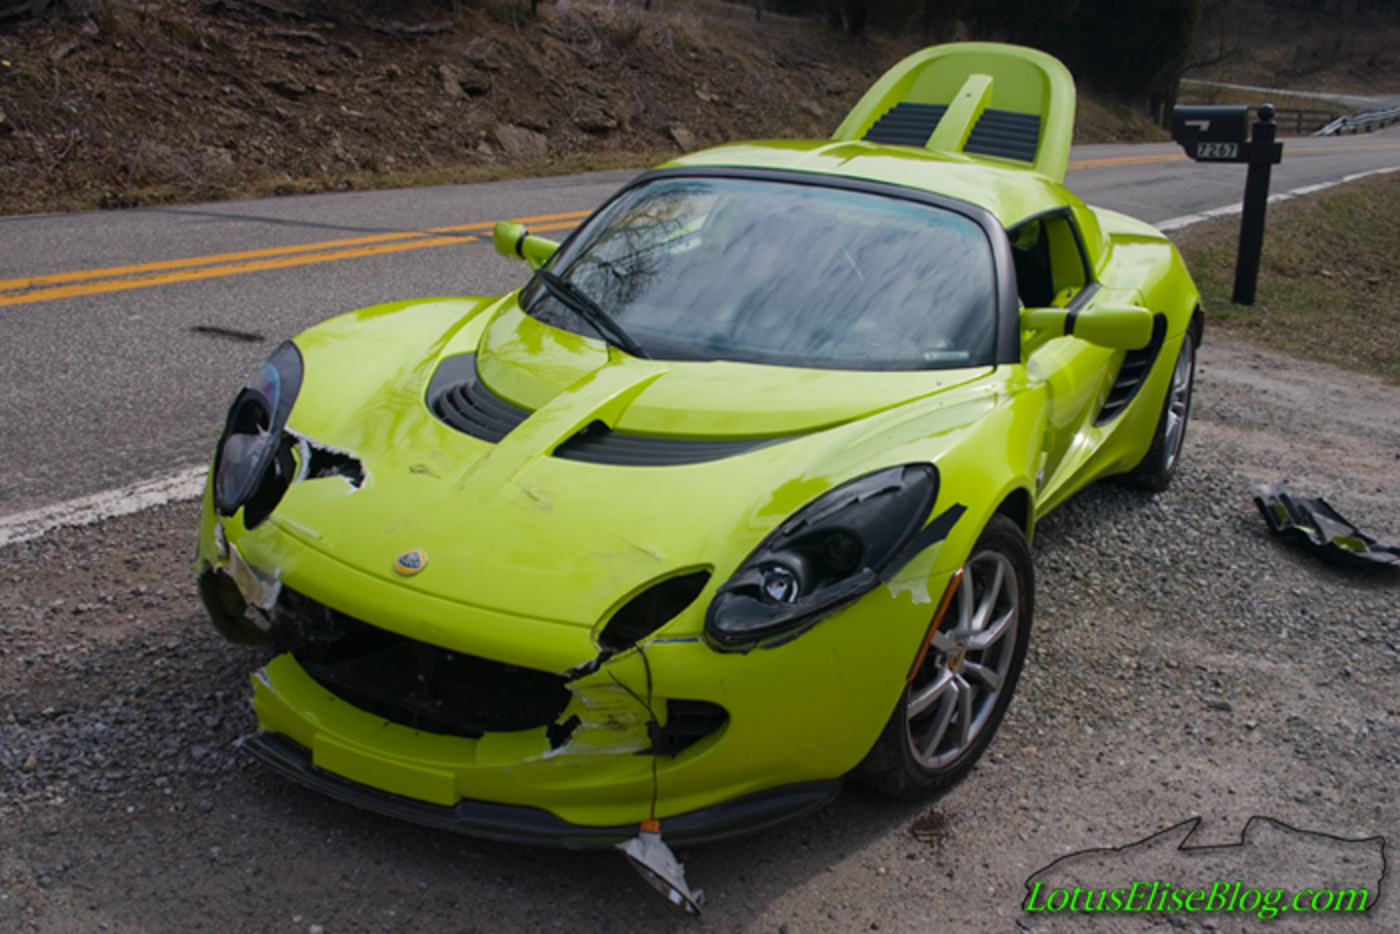 Lotus Elise Blog: The grand finale... | Lotus Elise Car Blog ...